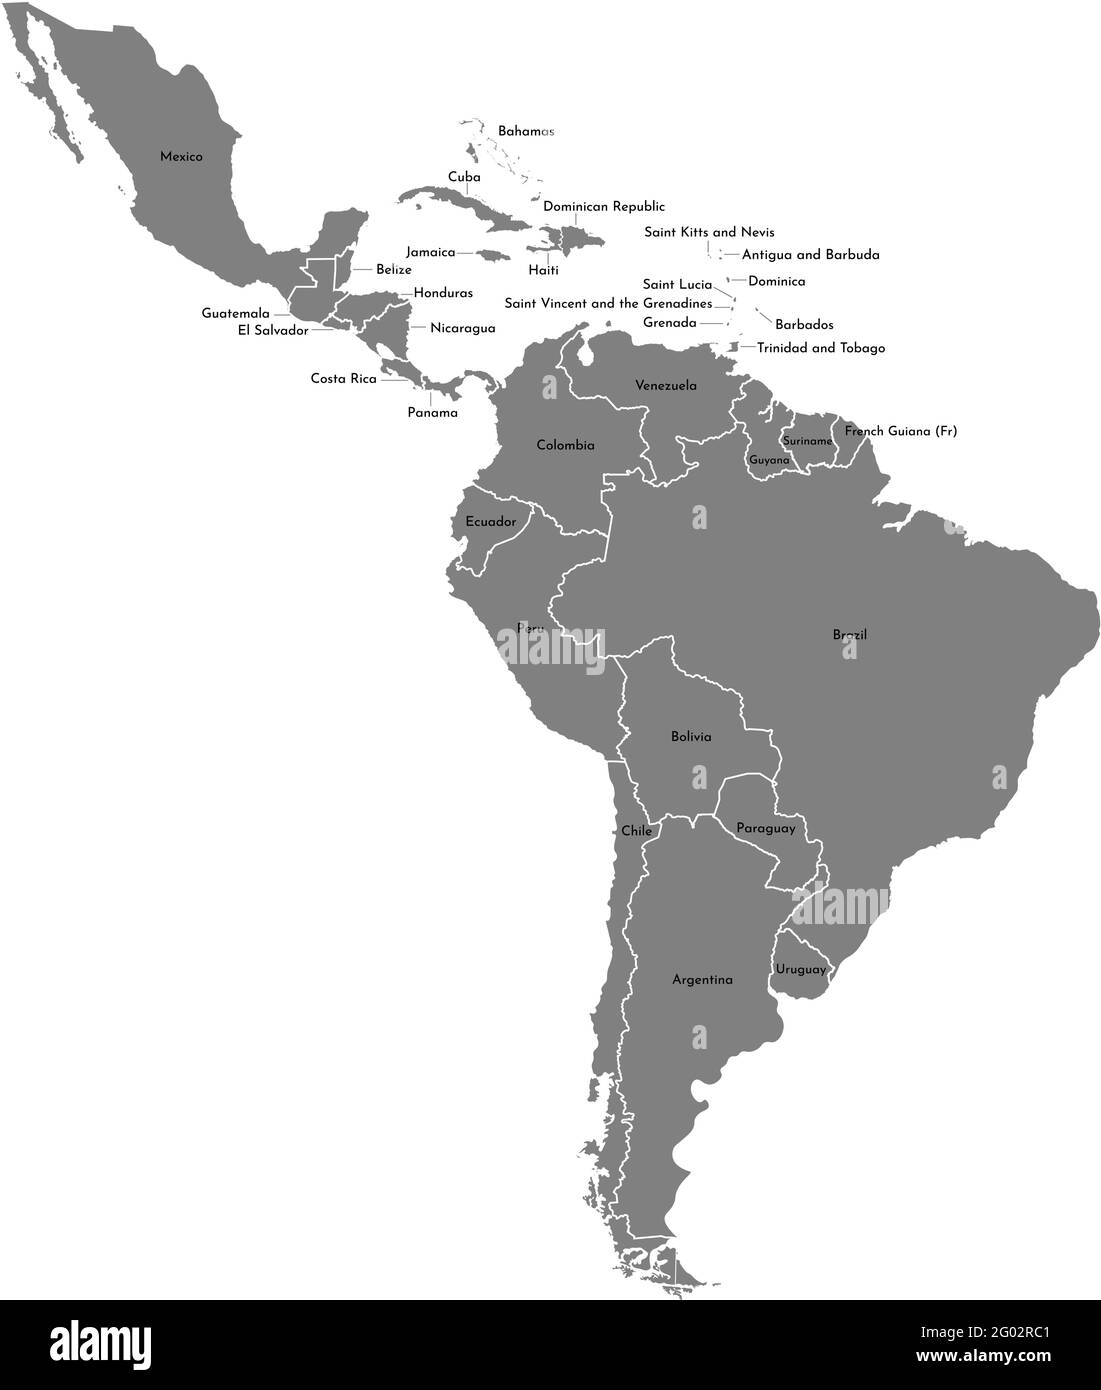 Illustration vectorielle avec carte du continent d'Amérique du Sud et d'une partie de l'Amérique centrale. Silhouettes grises, fond gris blanc. Illustration de Vecteur